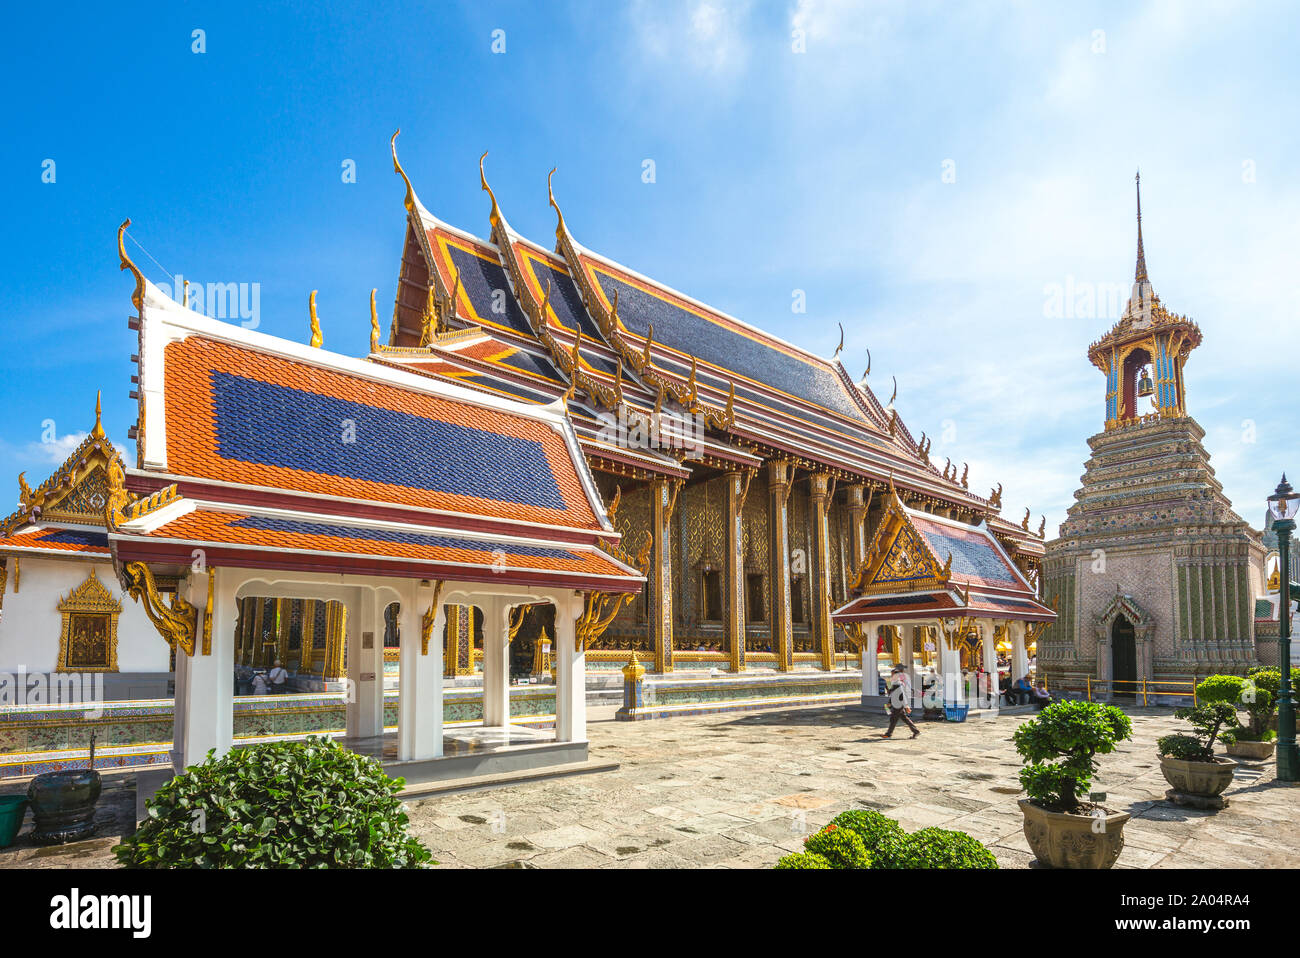 Wat Phra Kaew at grand palace, bangkok, thailand Stock Photo